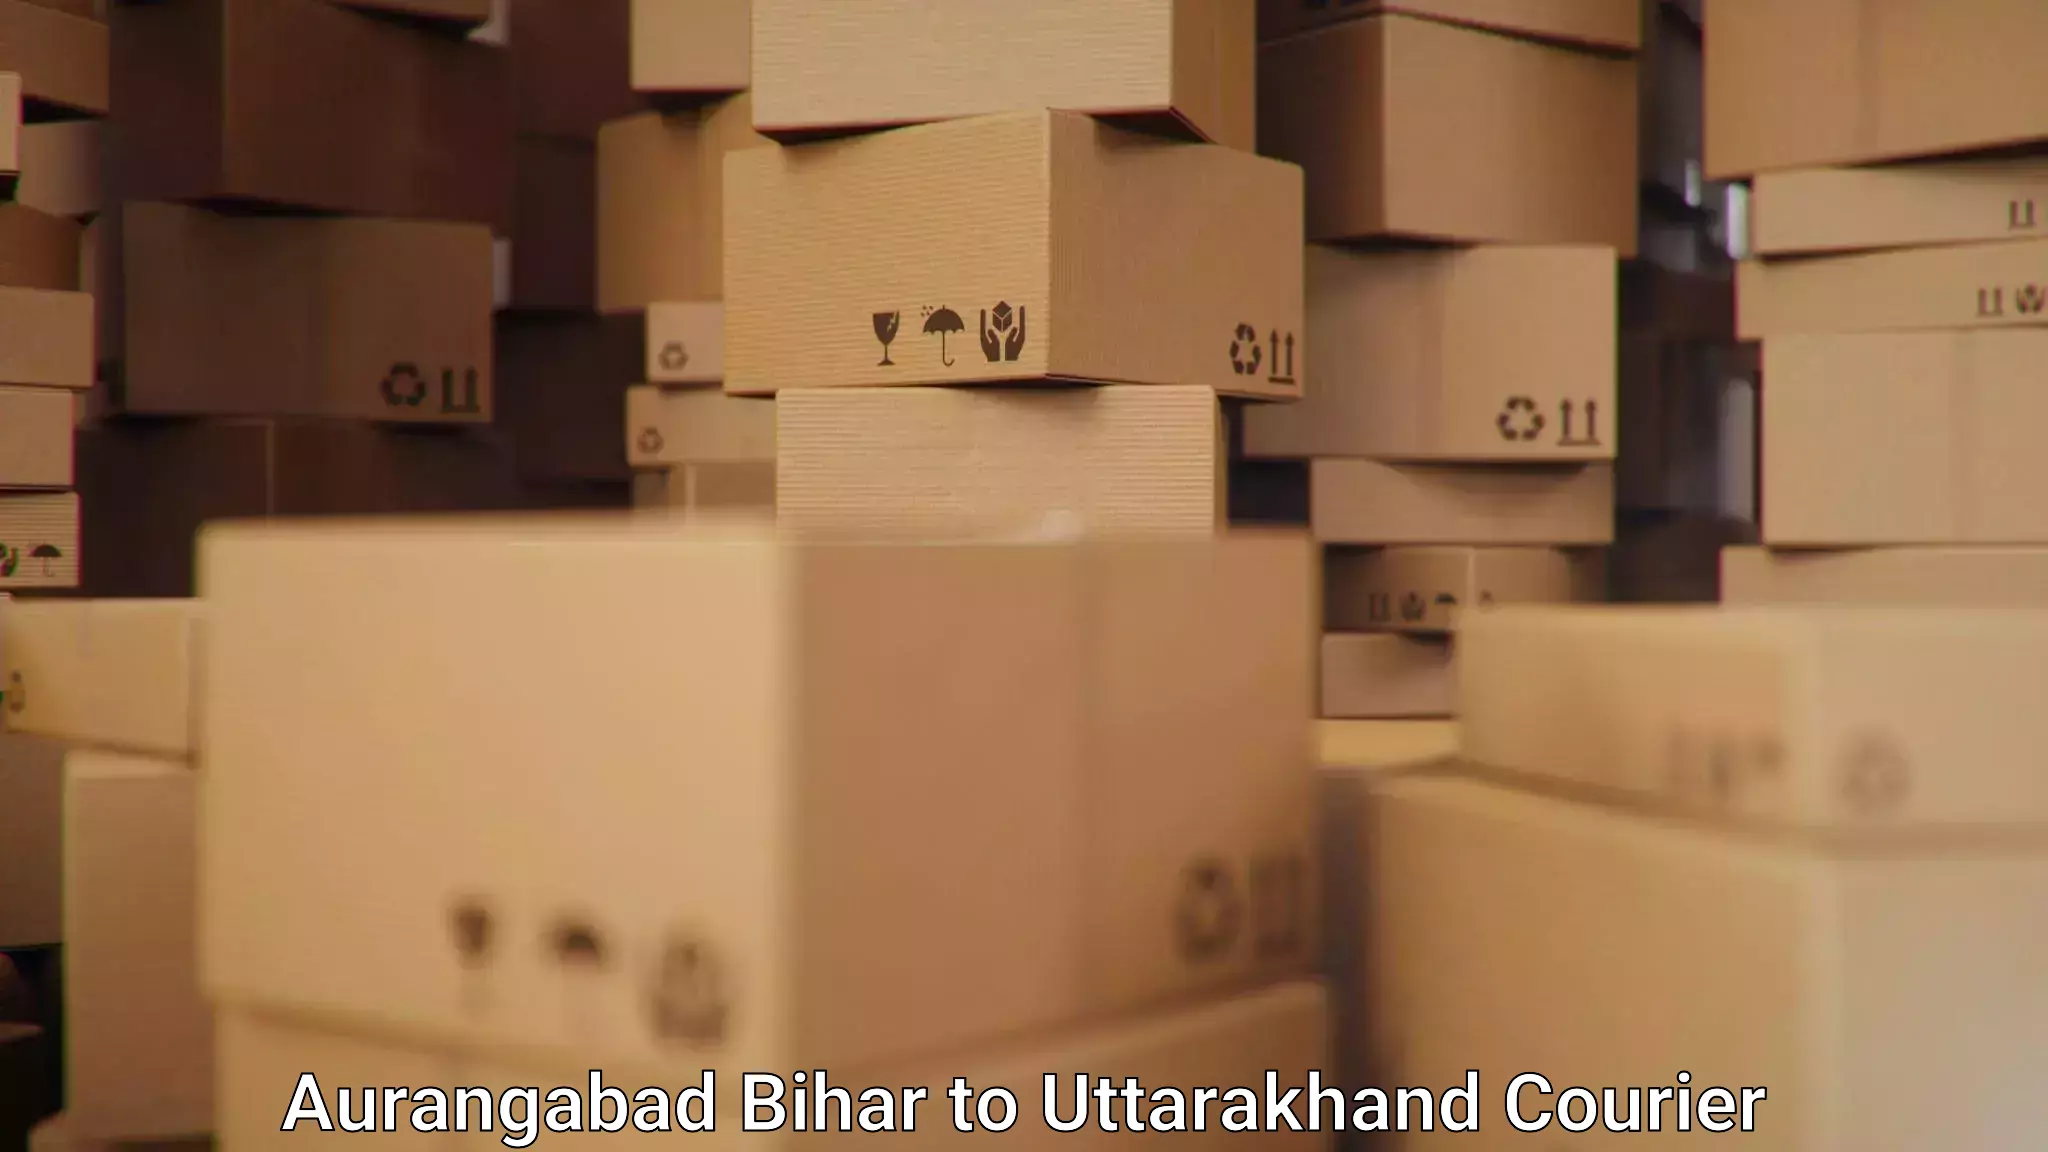 Advanced shipping services Aurangabad Bihar to Haridwar